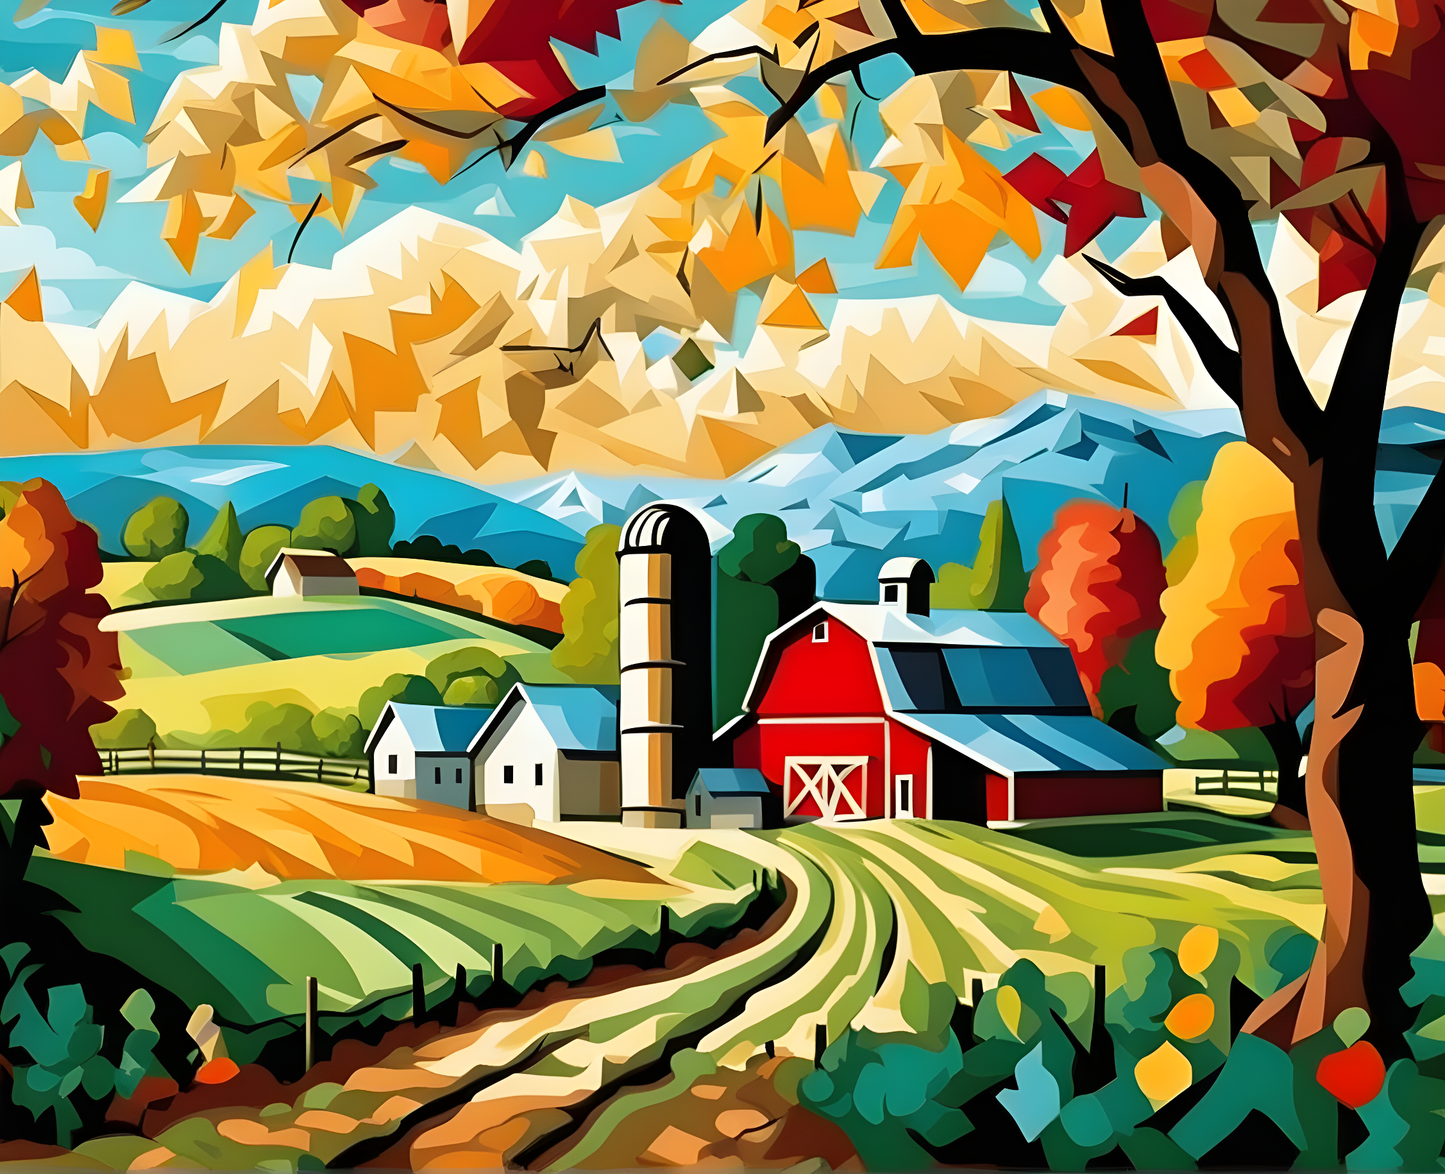 Farm Landscape - Van-Go Paint-By-Number Kit